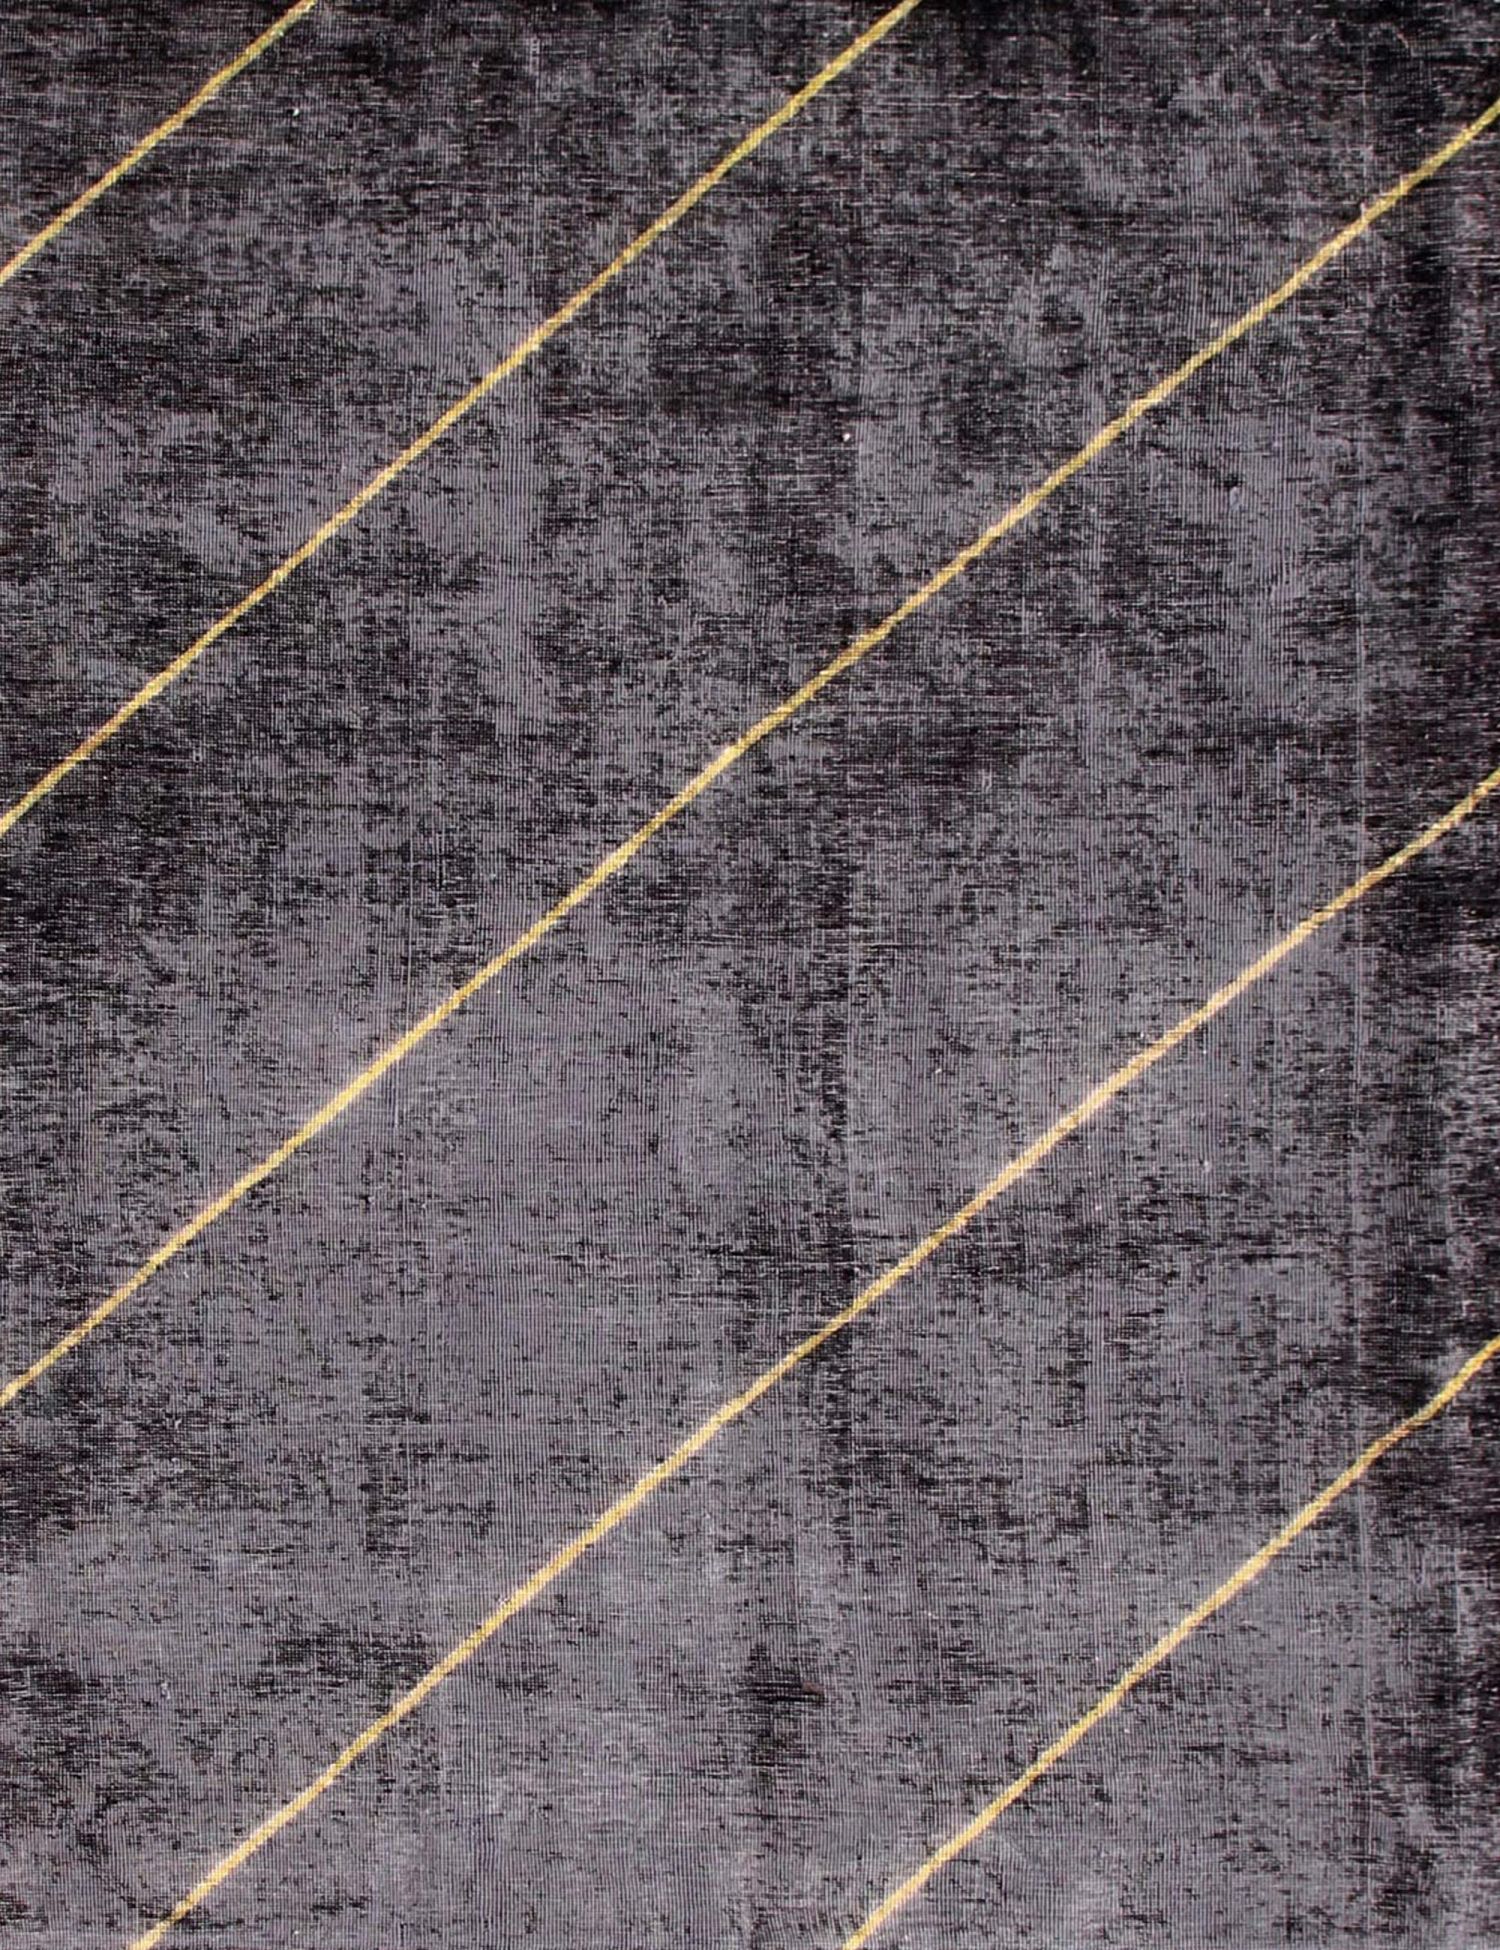 Persischer Vintage Teppich  grau <br/>218 x 218 cm